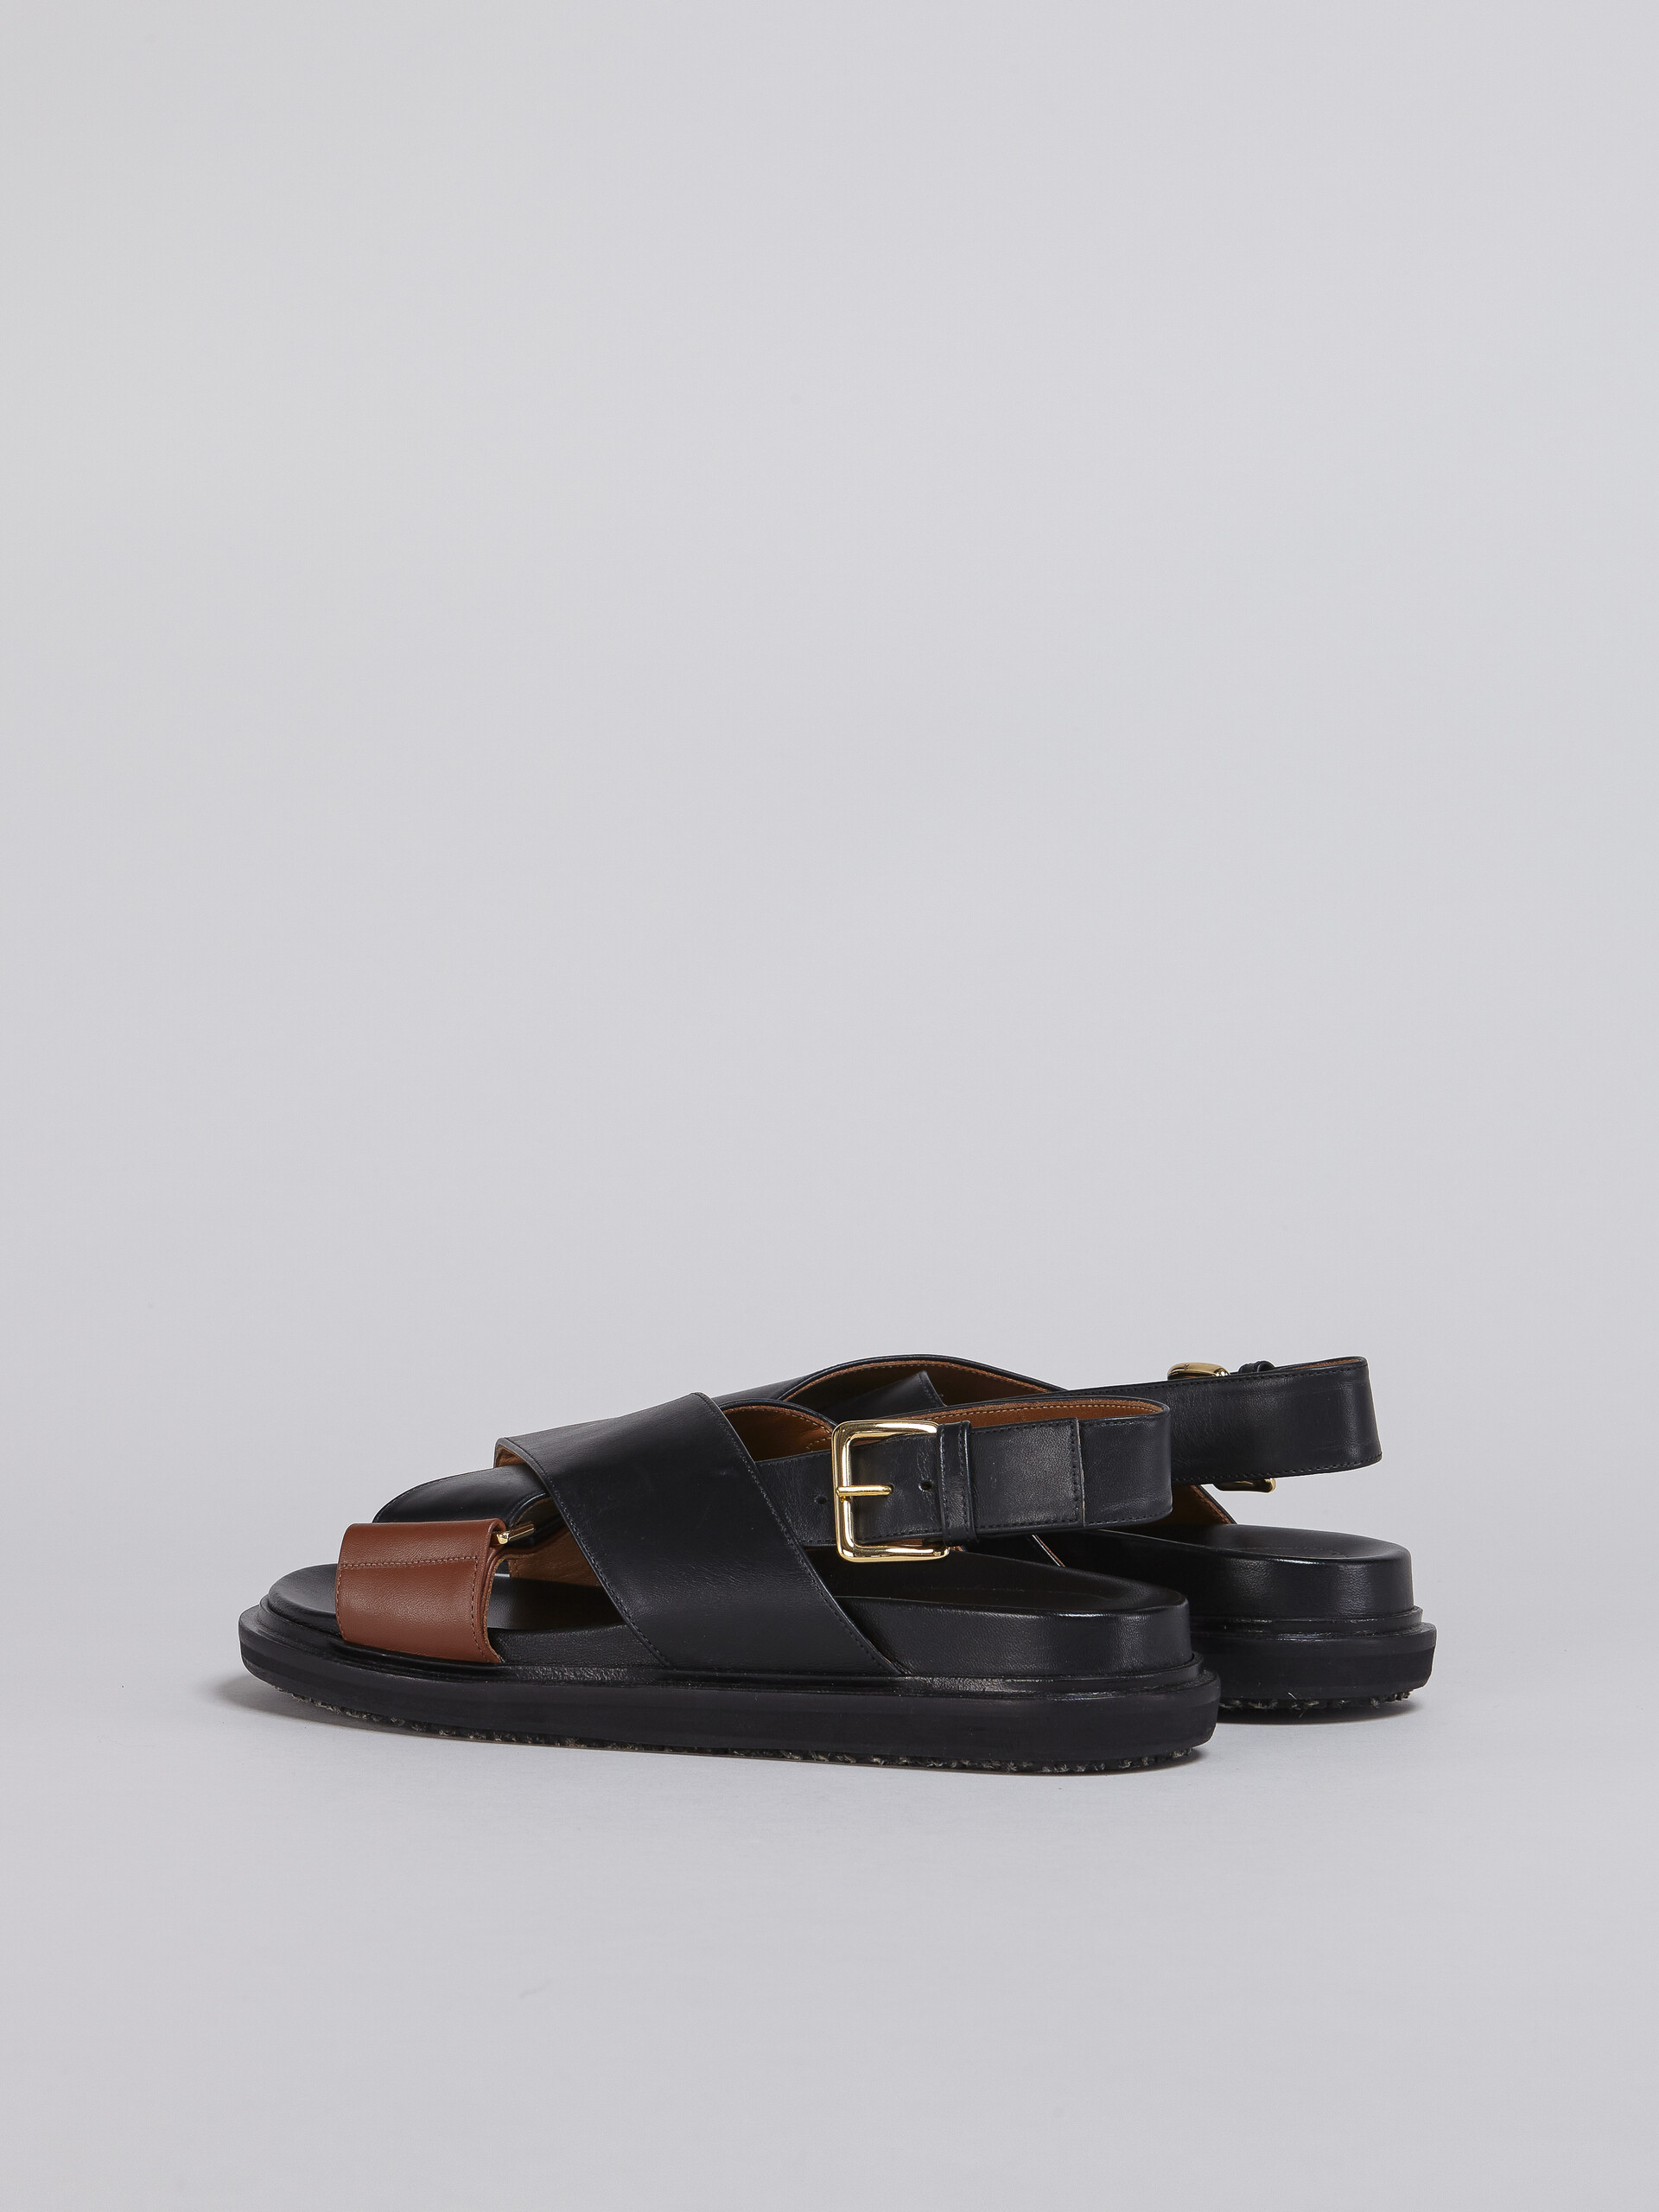 Sandales fussbett en cuir noir et marron - Sandales - Image 3